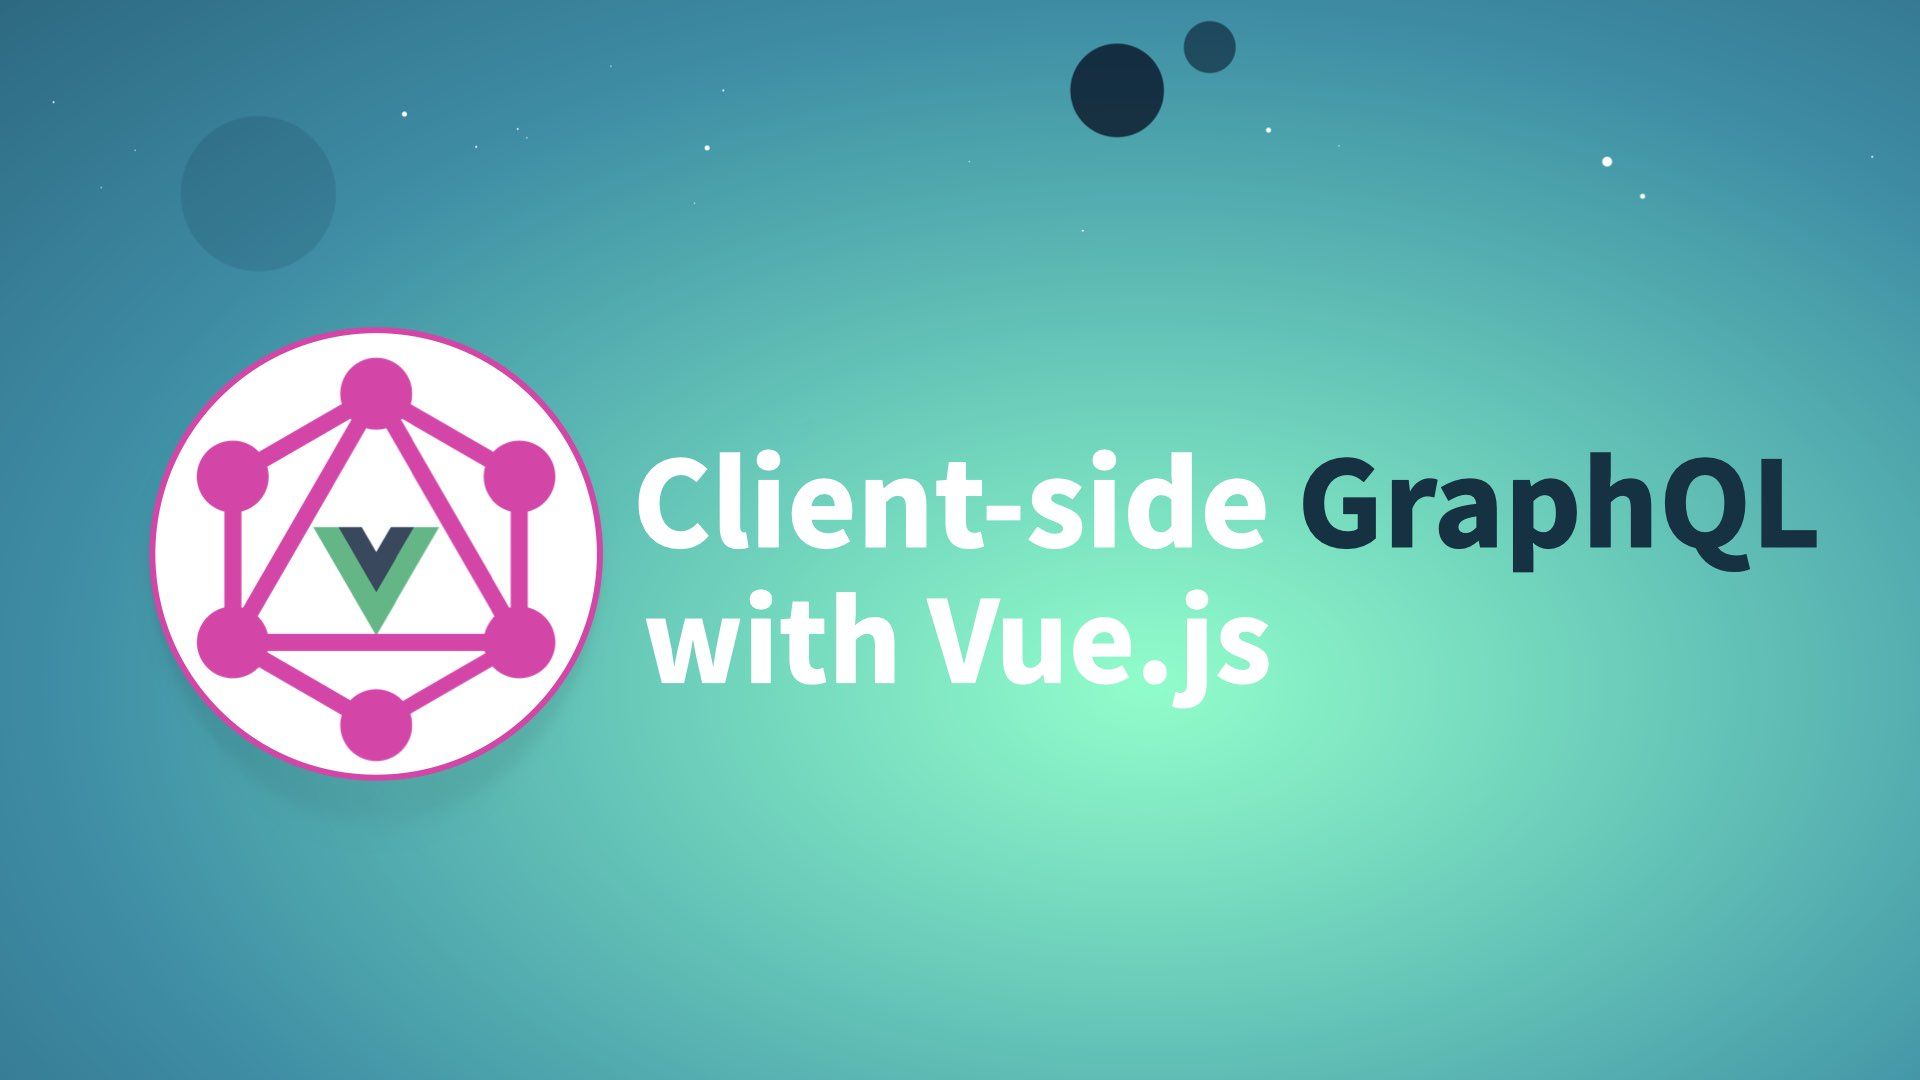 Part 3: Client-side GraphQL with Vue.js